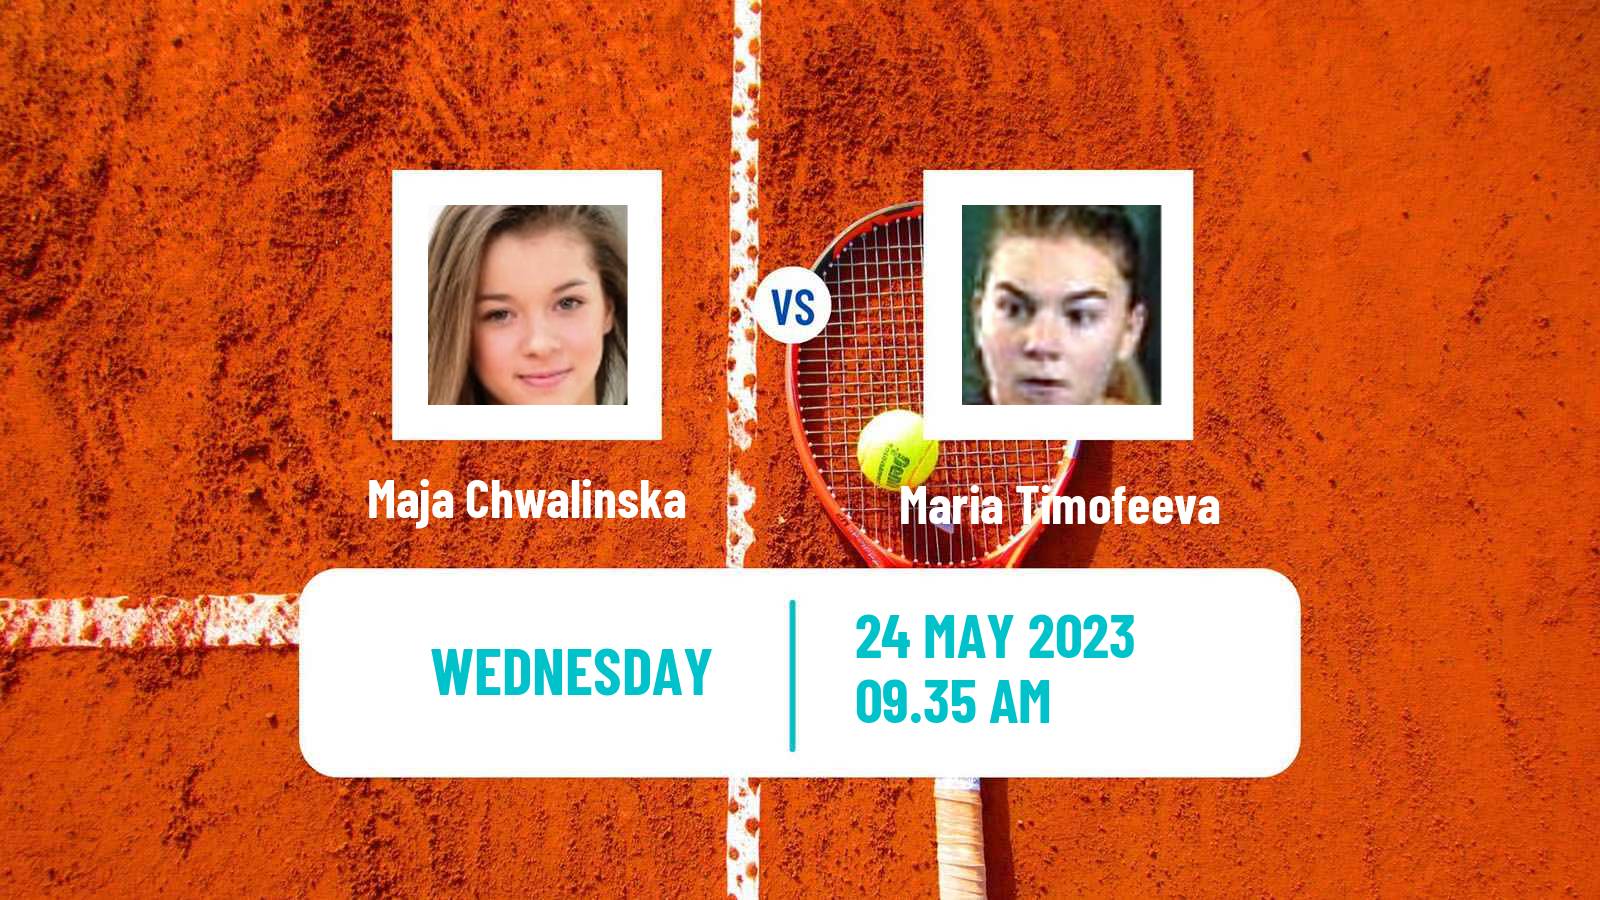 Tennis WTA Roland Garros Maja Chwalinska - Maria Timofeeva